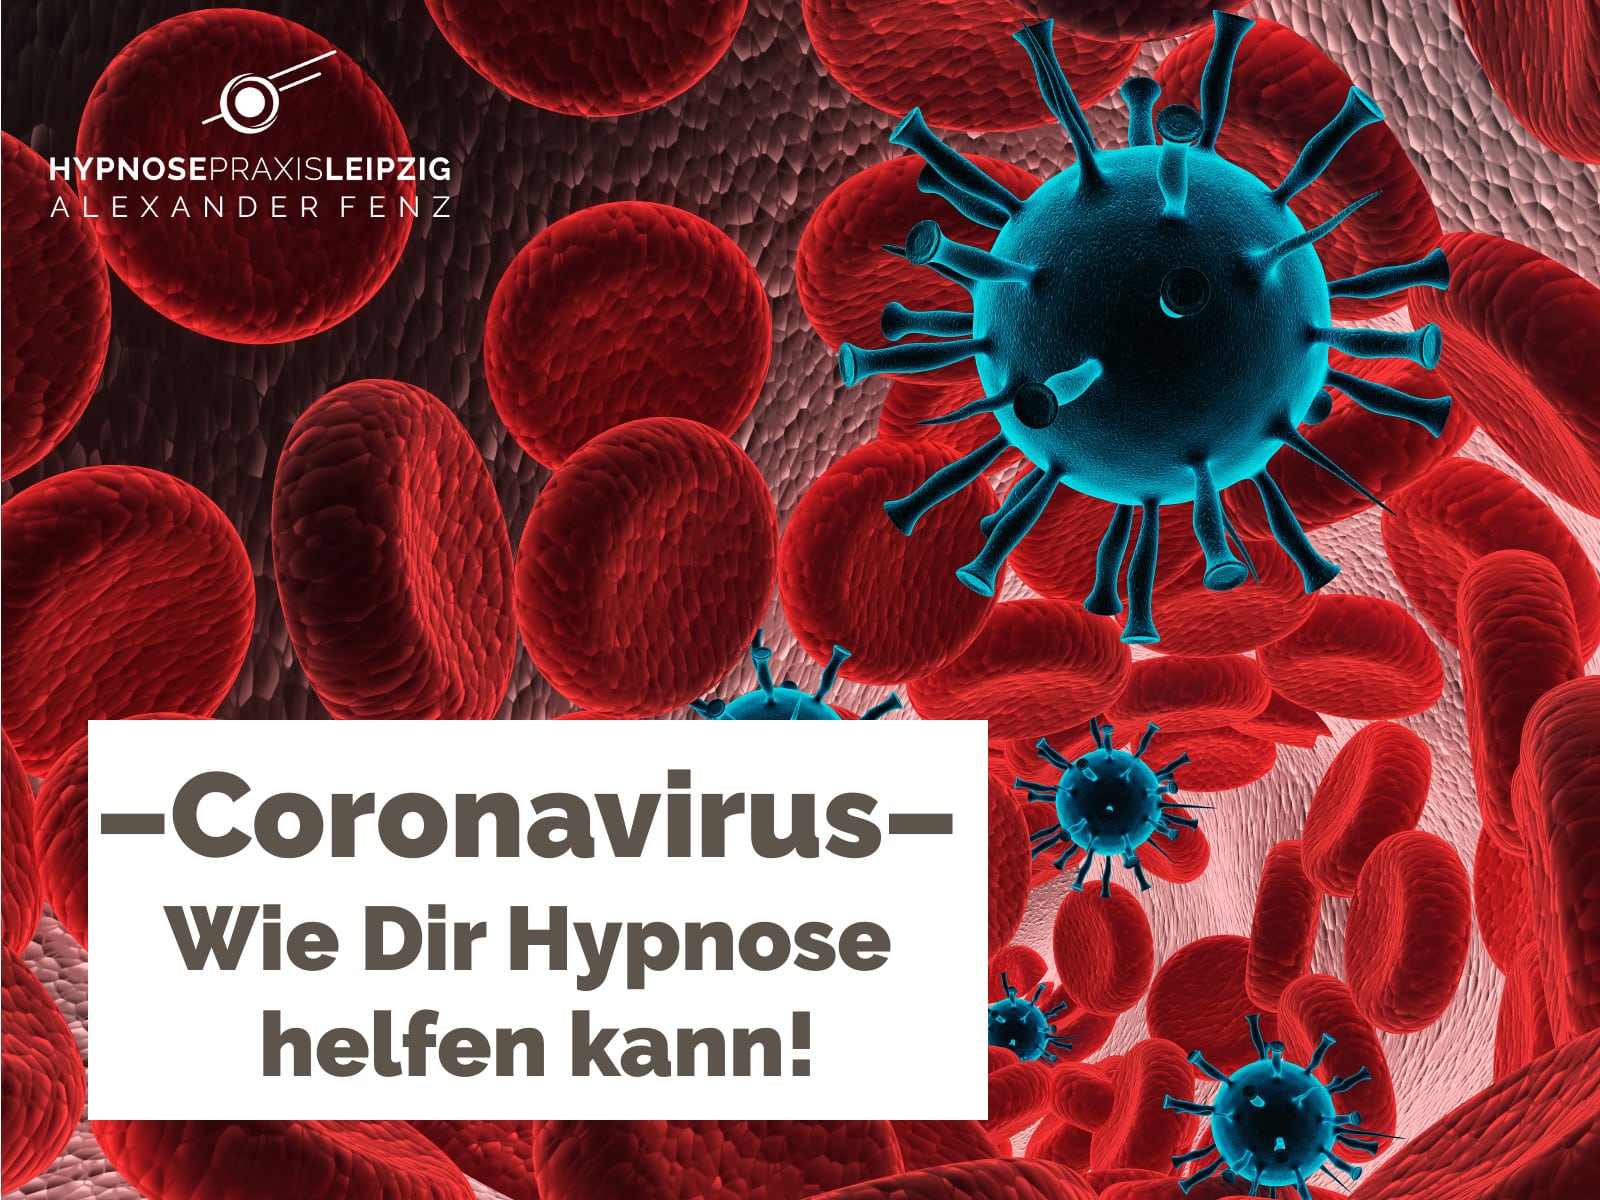 Coronavirus - Hypnose Immunsystem stärken